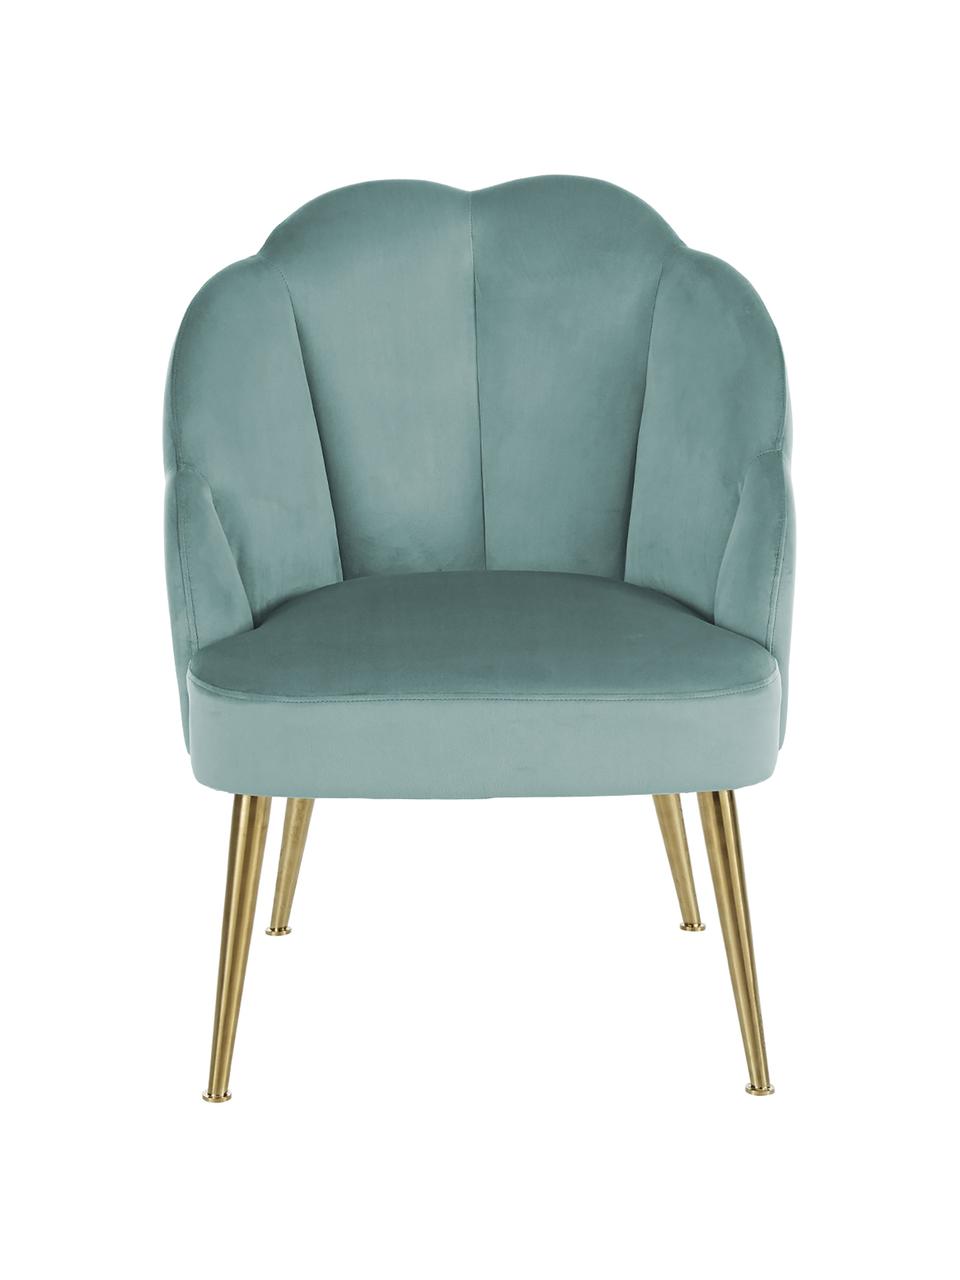 Fluwelen fauteuil Helle in turquoise, Bekleding: fluweel (polyester), Poten: gepoedercoat metaal, Fluweel turquoise, B 65 x D 65 cm